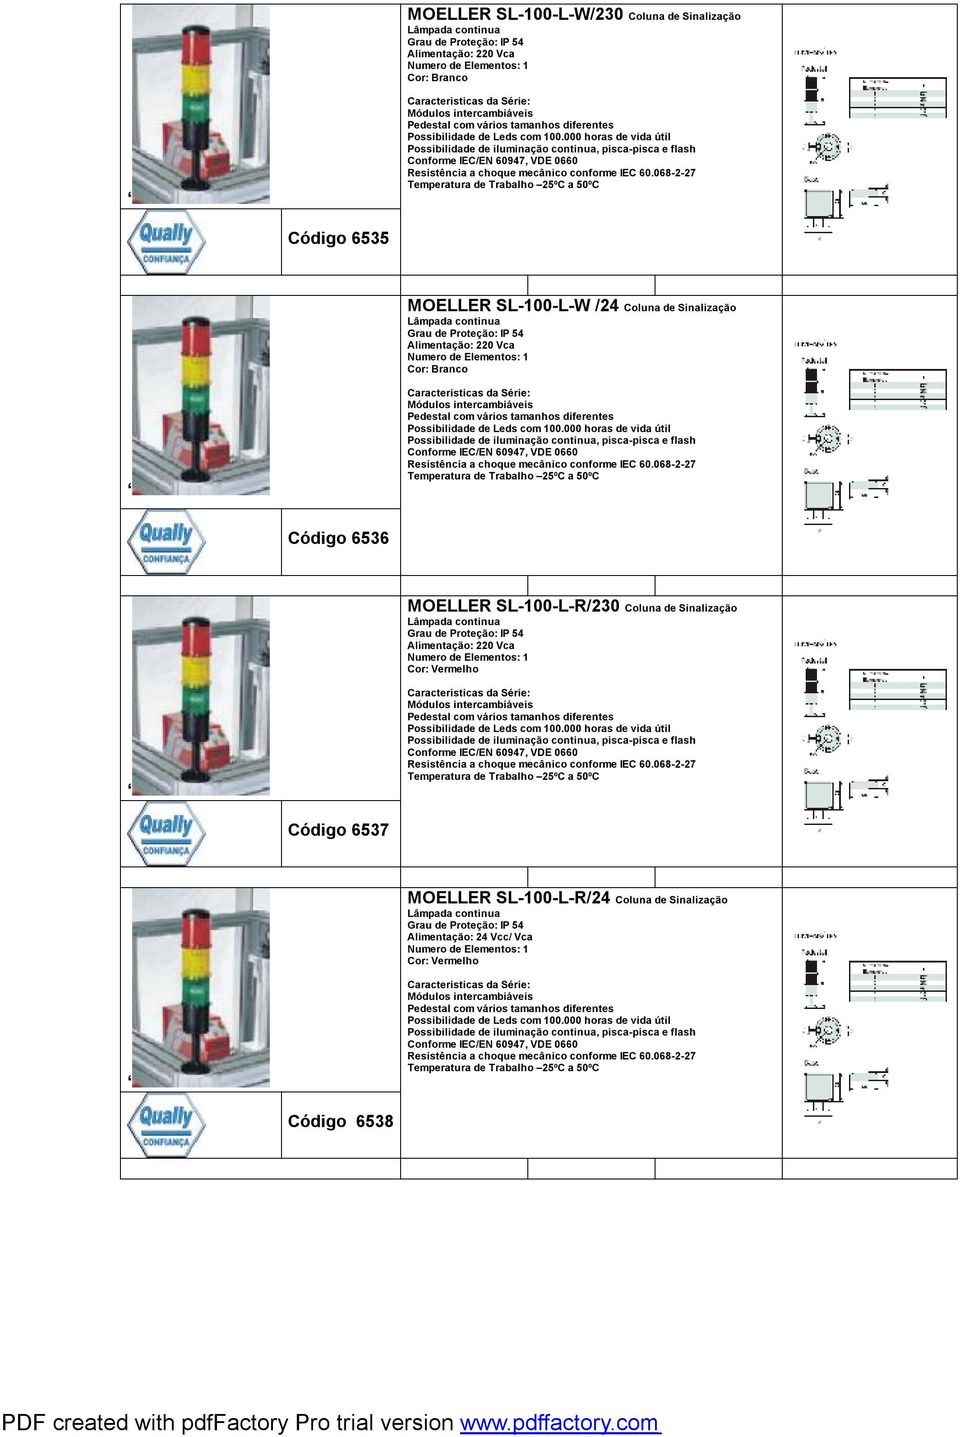 MOELLER SL-100-L-R/230 Coluna de Sinalização Código 6537